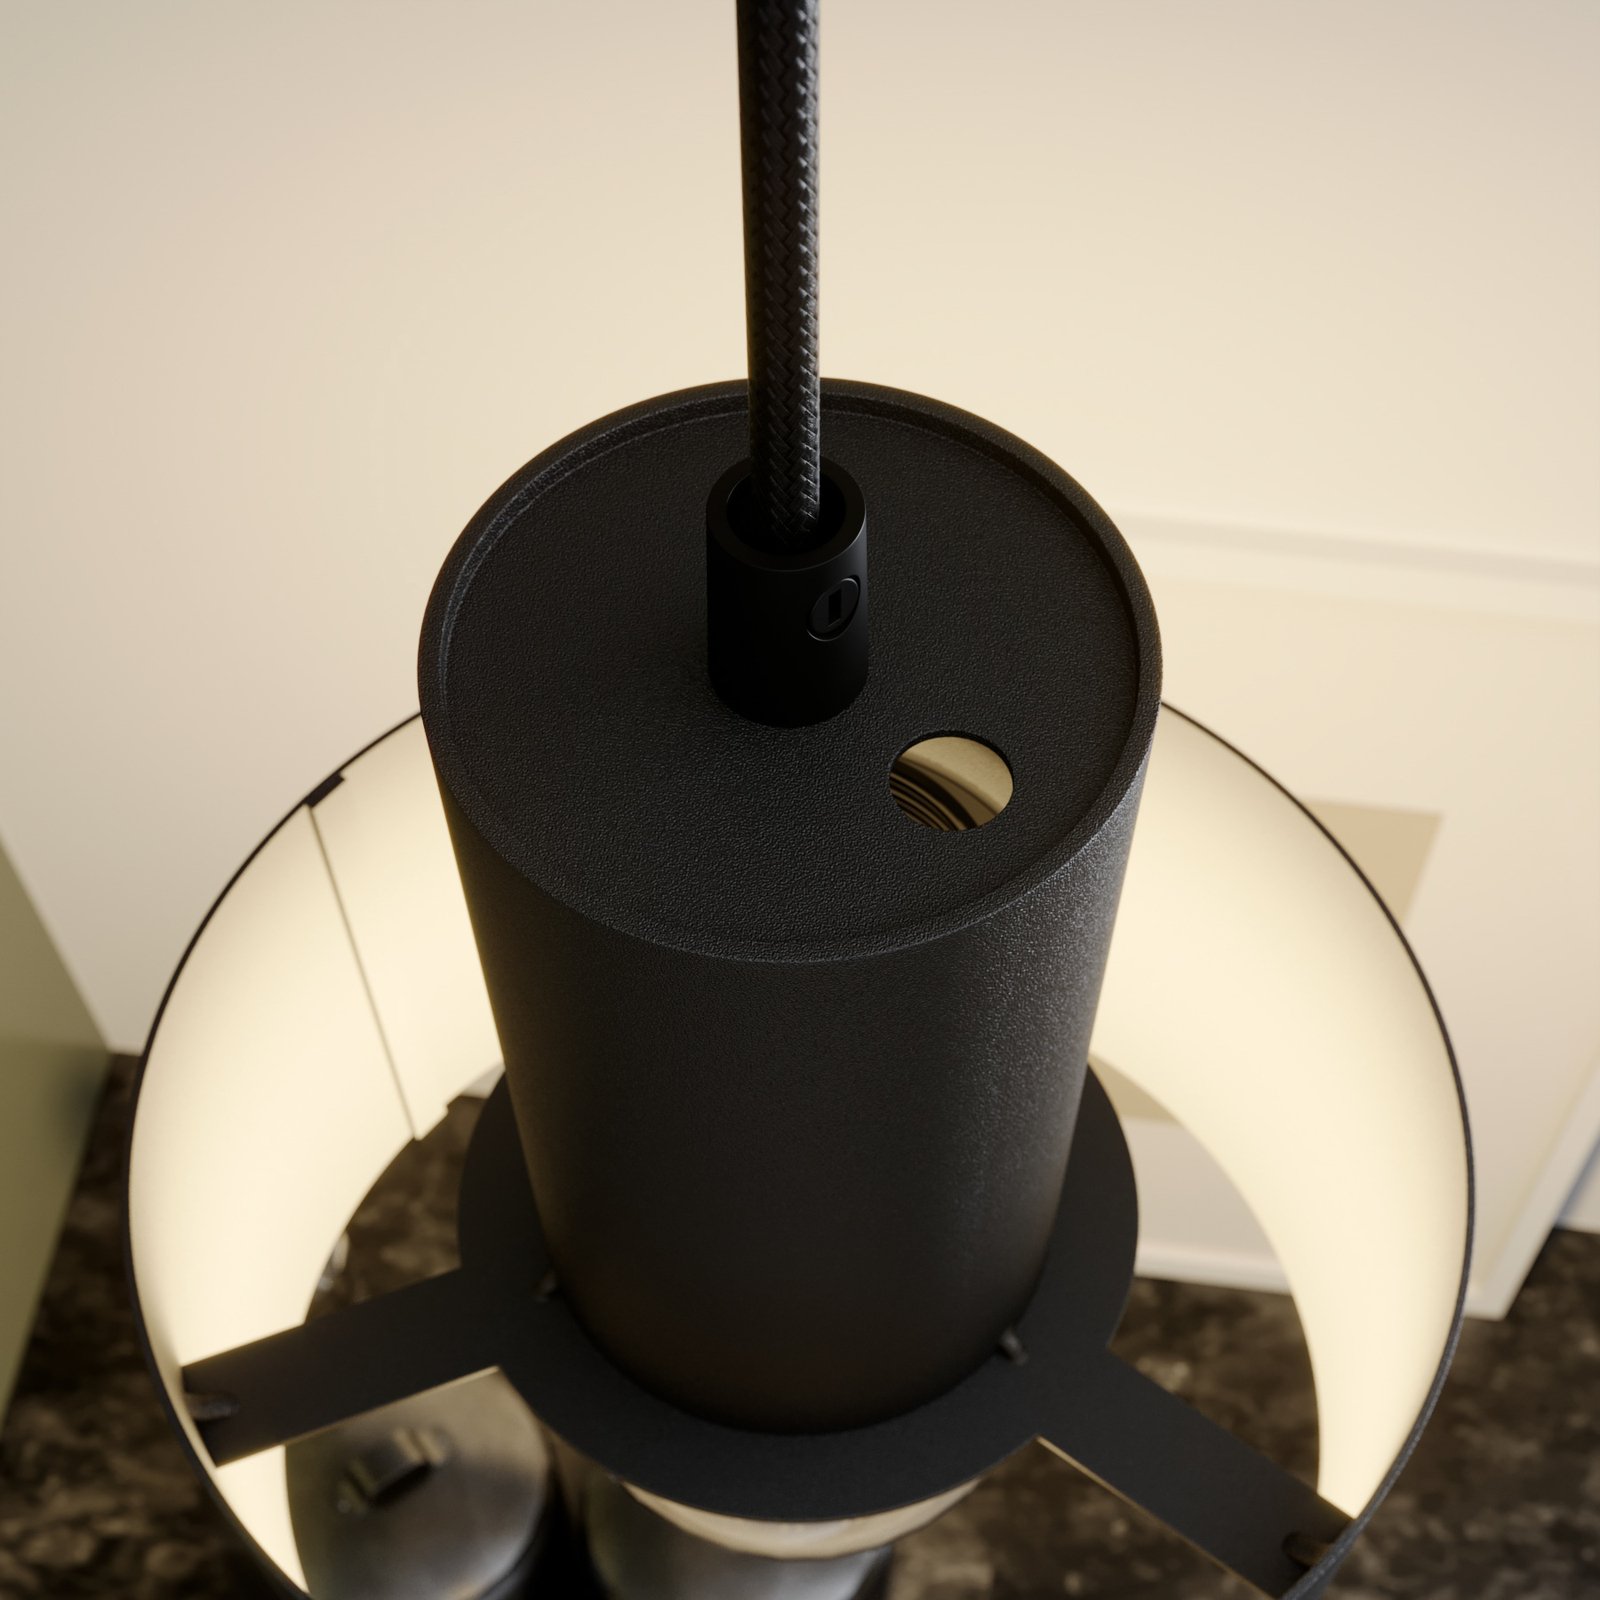 Rif függő lámpa fémből, fekete, Ø 15 cm